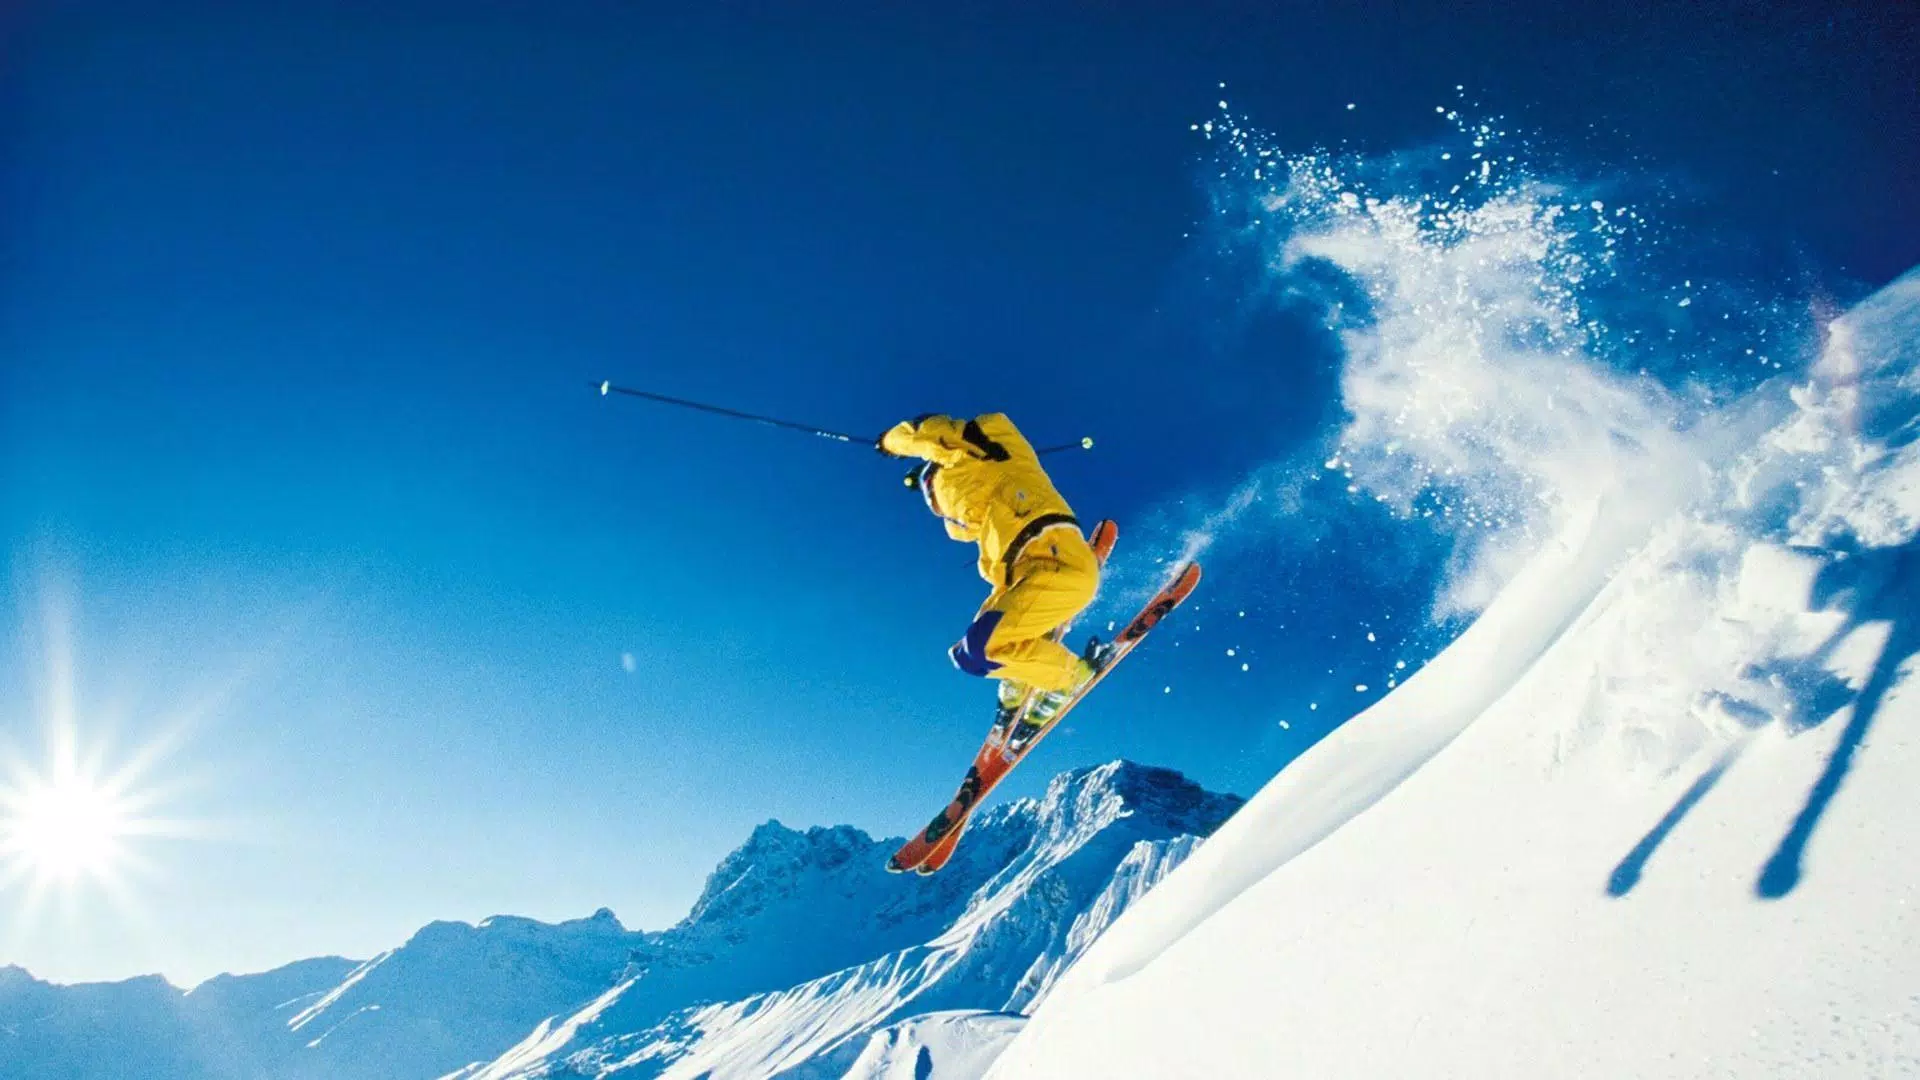 Trượt tuyết Wallpaper: Tận hưởng vẻ đẹp của đông xuân với những trượt tuyết đẹp mắt. Khám phá những khung cảnh tuyết trắng tinh khiết được tạo nên bởi tạo hóa. Hãy thư giãn cùng những bức tranh trượt tuyết tuyệt đẹp để thấy rằng cuộc sống còn rất nhiều điều tuyệt vời đang chờ đợi phía trước.